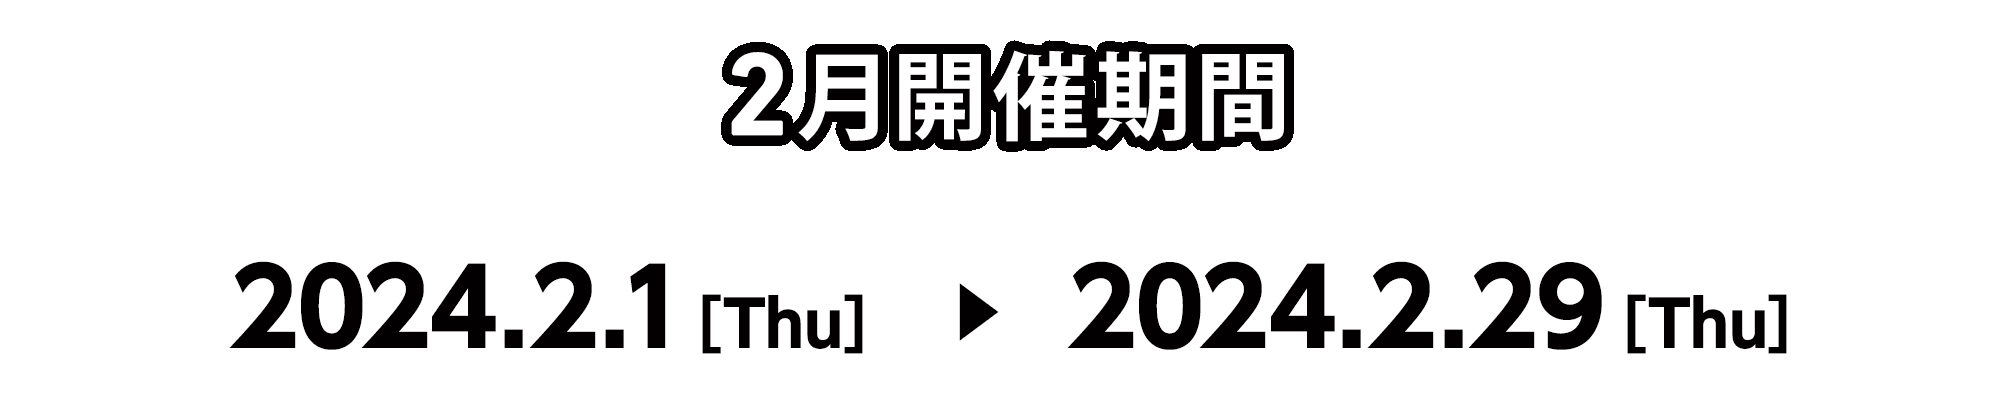 2月開催期間 2024.2.1[Thu] ～ 2024.2.29[Thu]